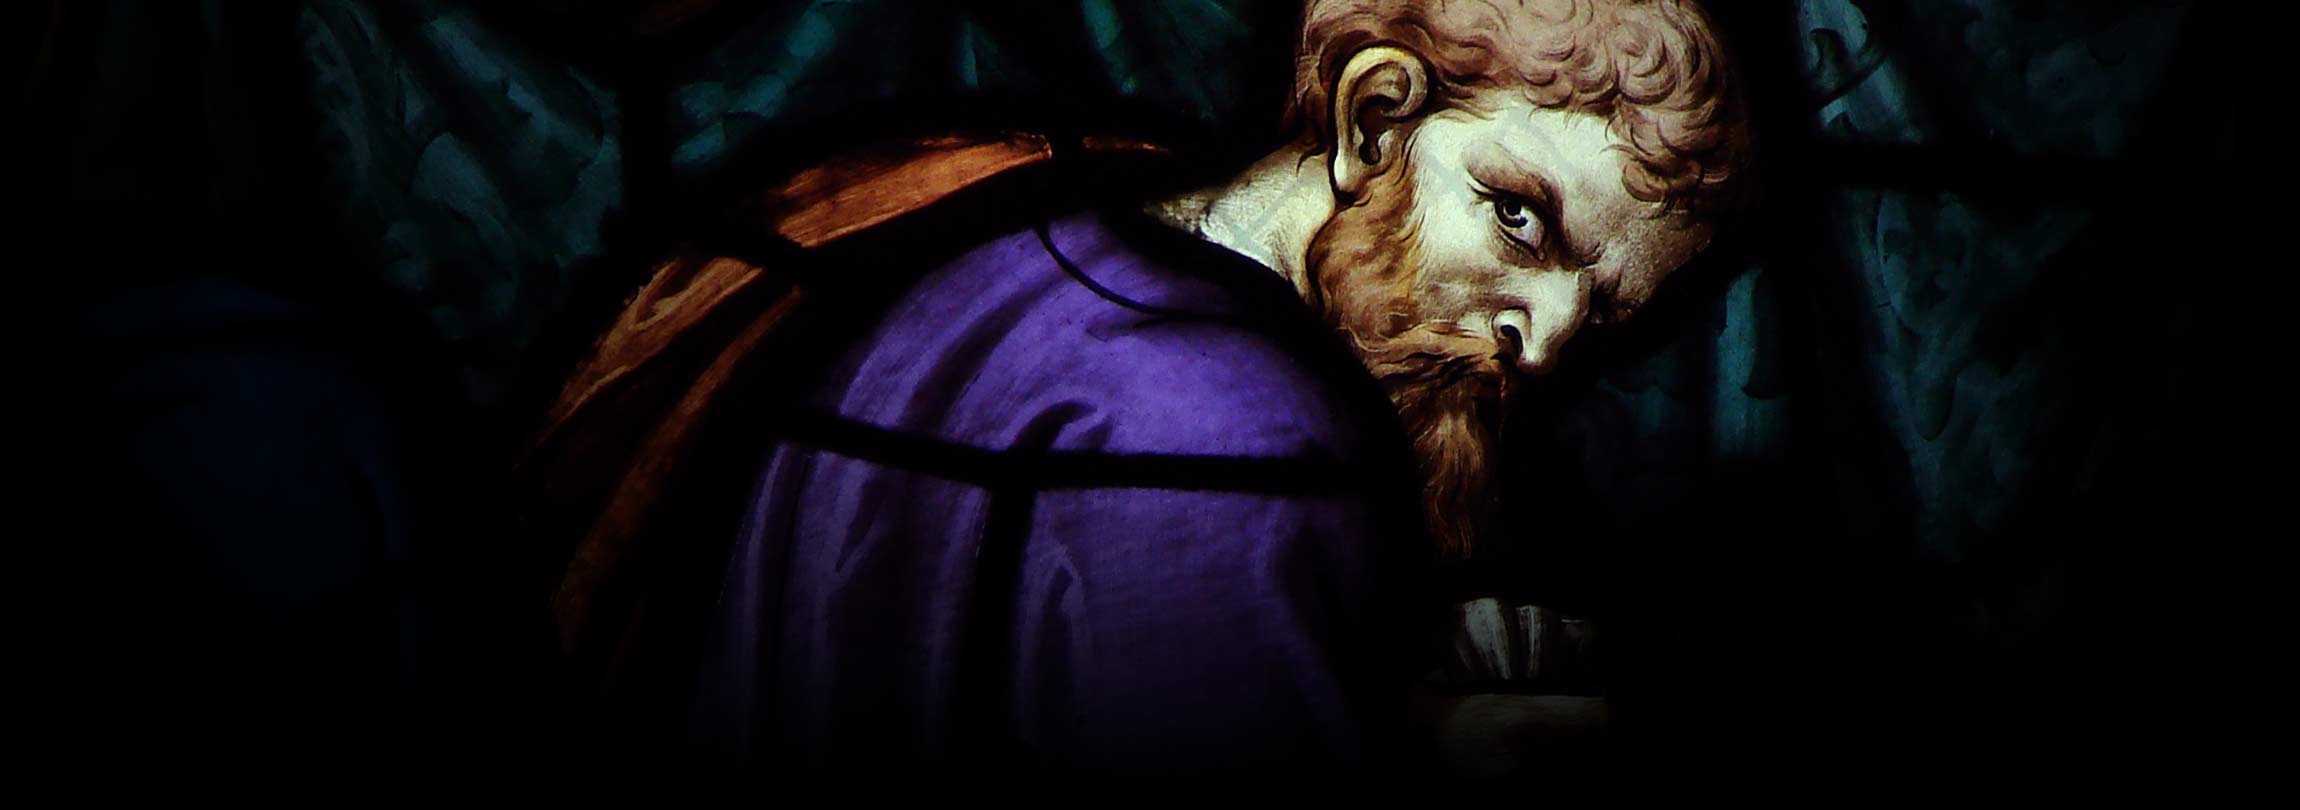 Judas e Pilatos merecem a nossa simpatia?